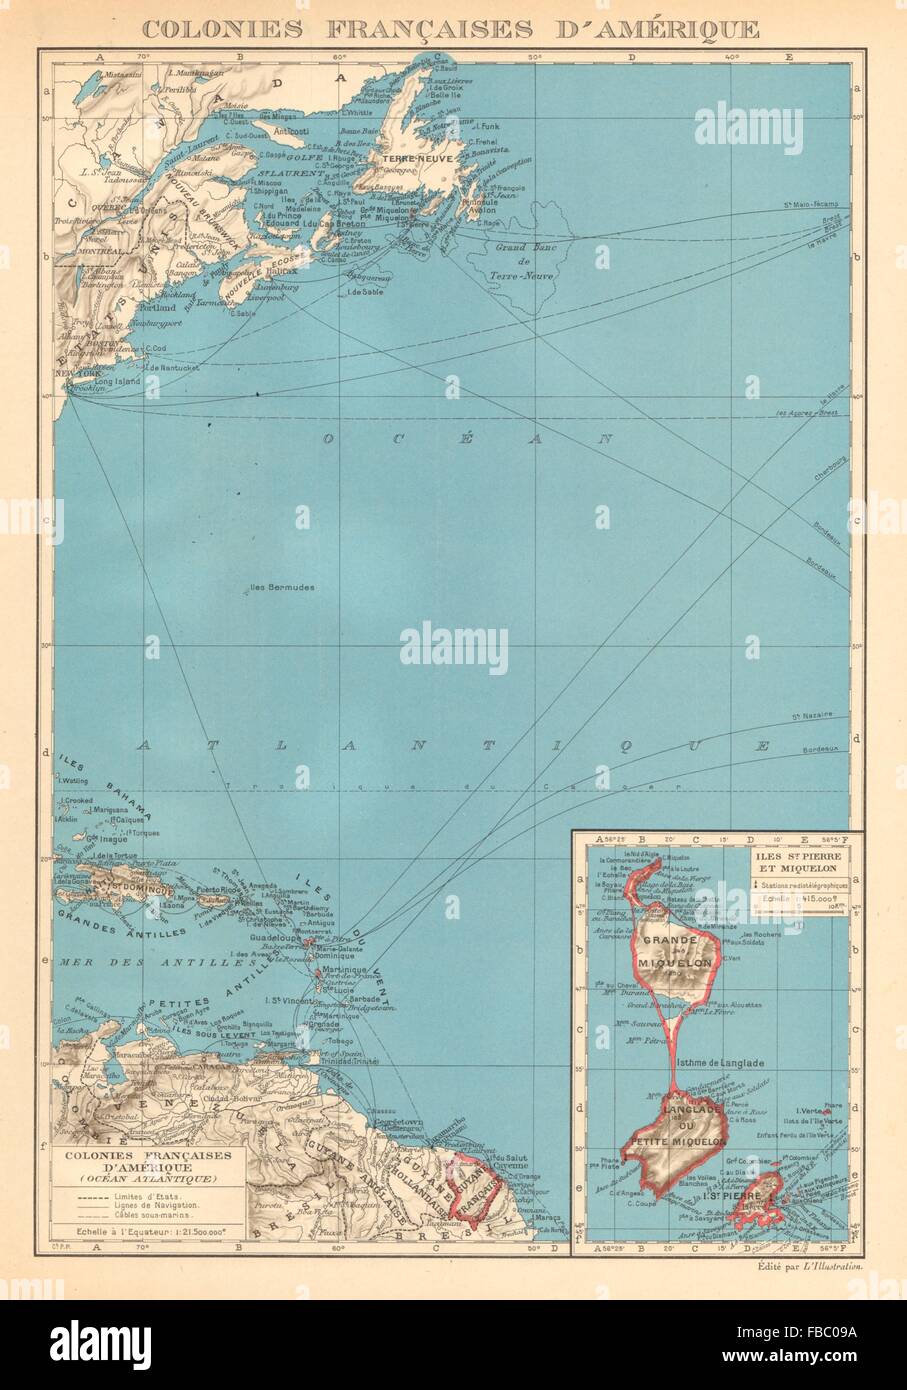 FRENCH AMERICAS. Colonies Françaises d' Amerique. St-Pierre et Miquelon 1938 map Stock Photo